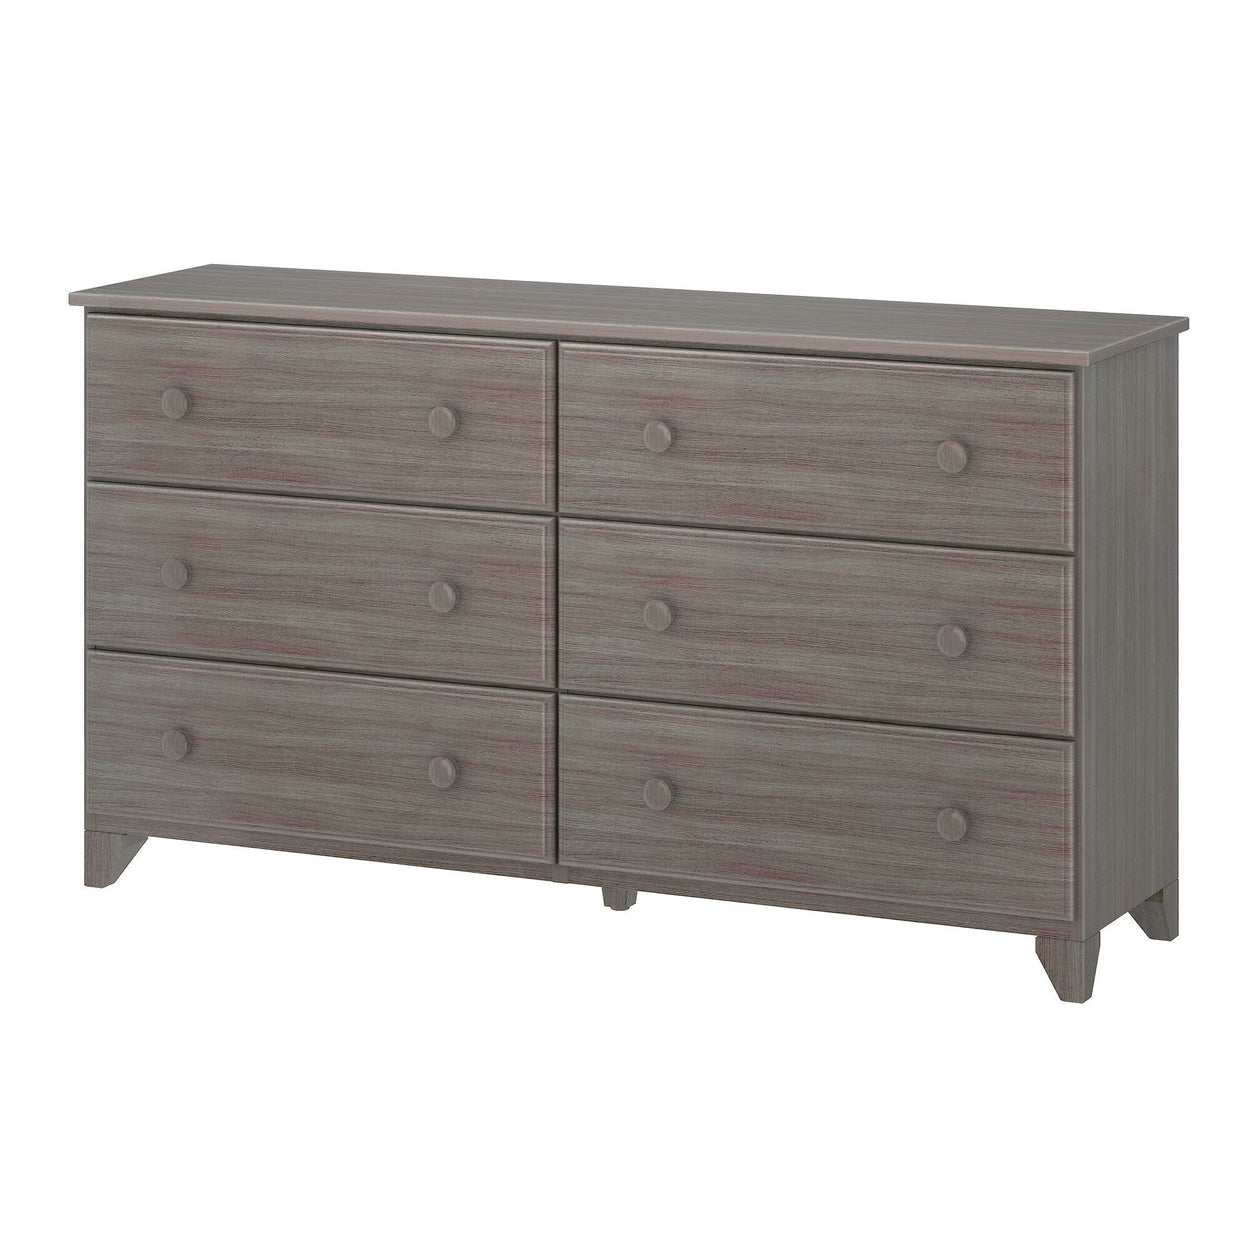 180016-151 : Furniture 6-Drawer Dresser, Clay